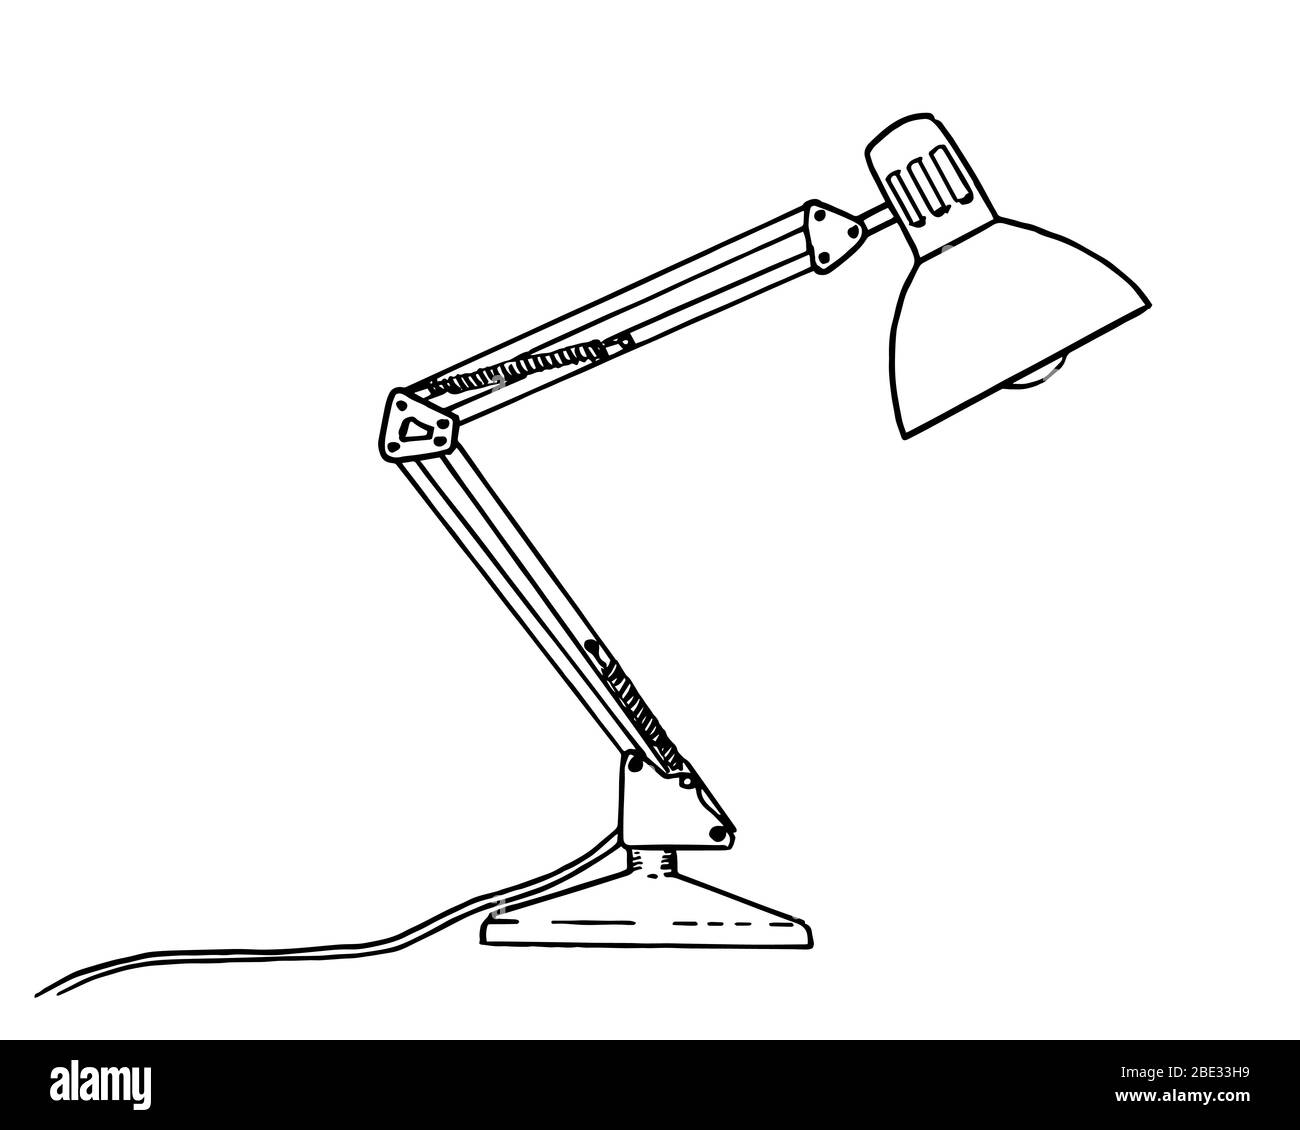 Dessin d'une lampe de bureau classique - illustration noire et blanche  Image Vectorielle Stock - Alamy